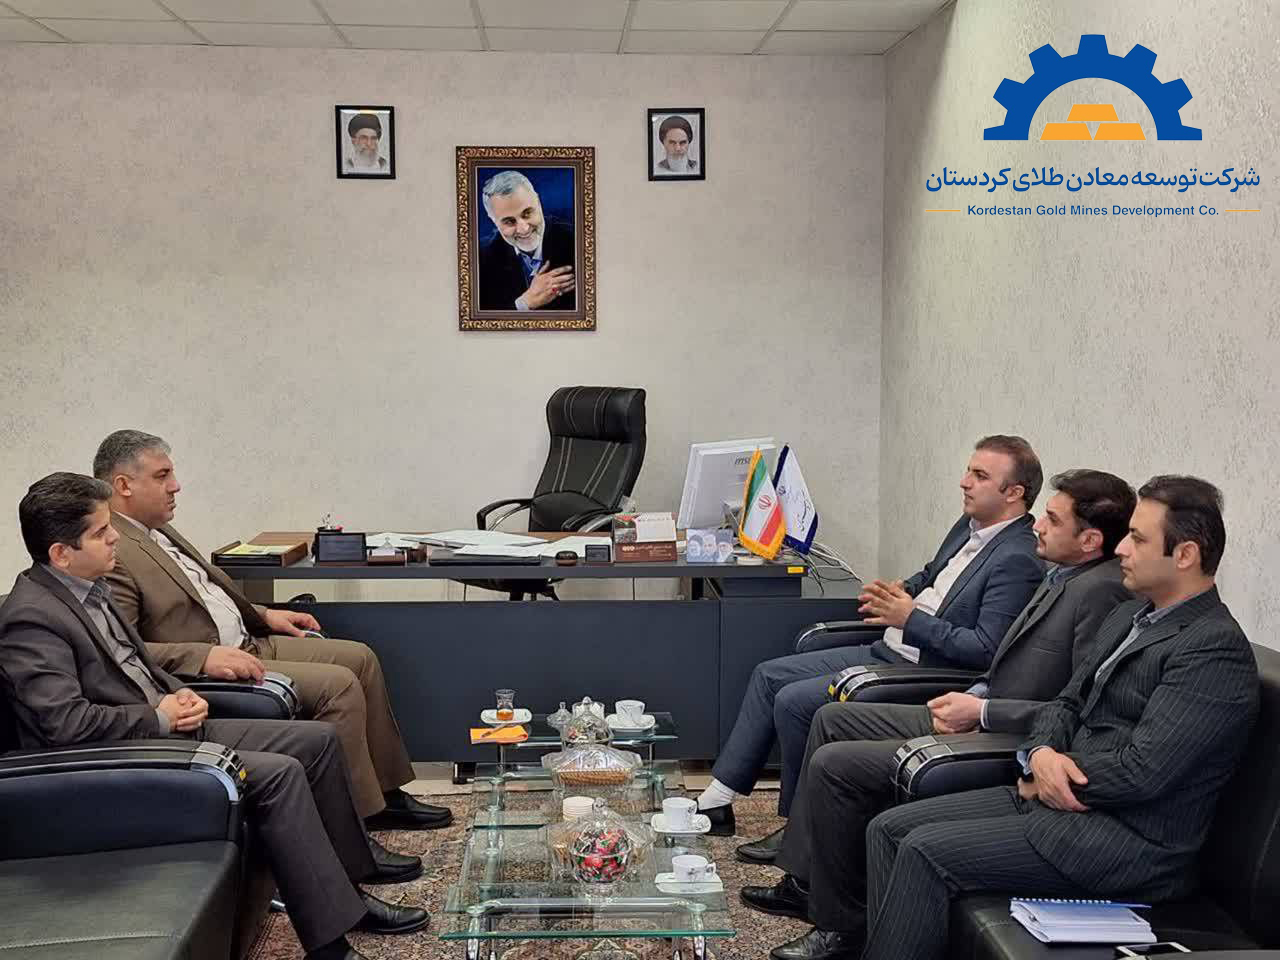 برگزاری نشست مشترک مدیر عامل و عضو هیأت مدیره شرکت توسعه معادن طلای کردستان با معاونت هماهنگی امور اقتصادی استانداری کردستان